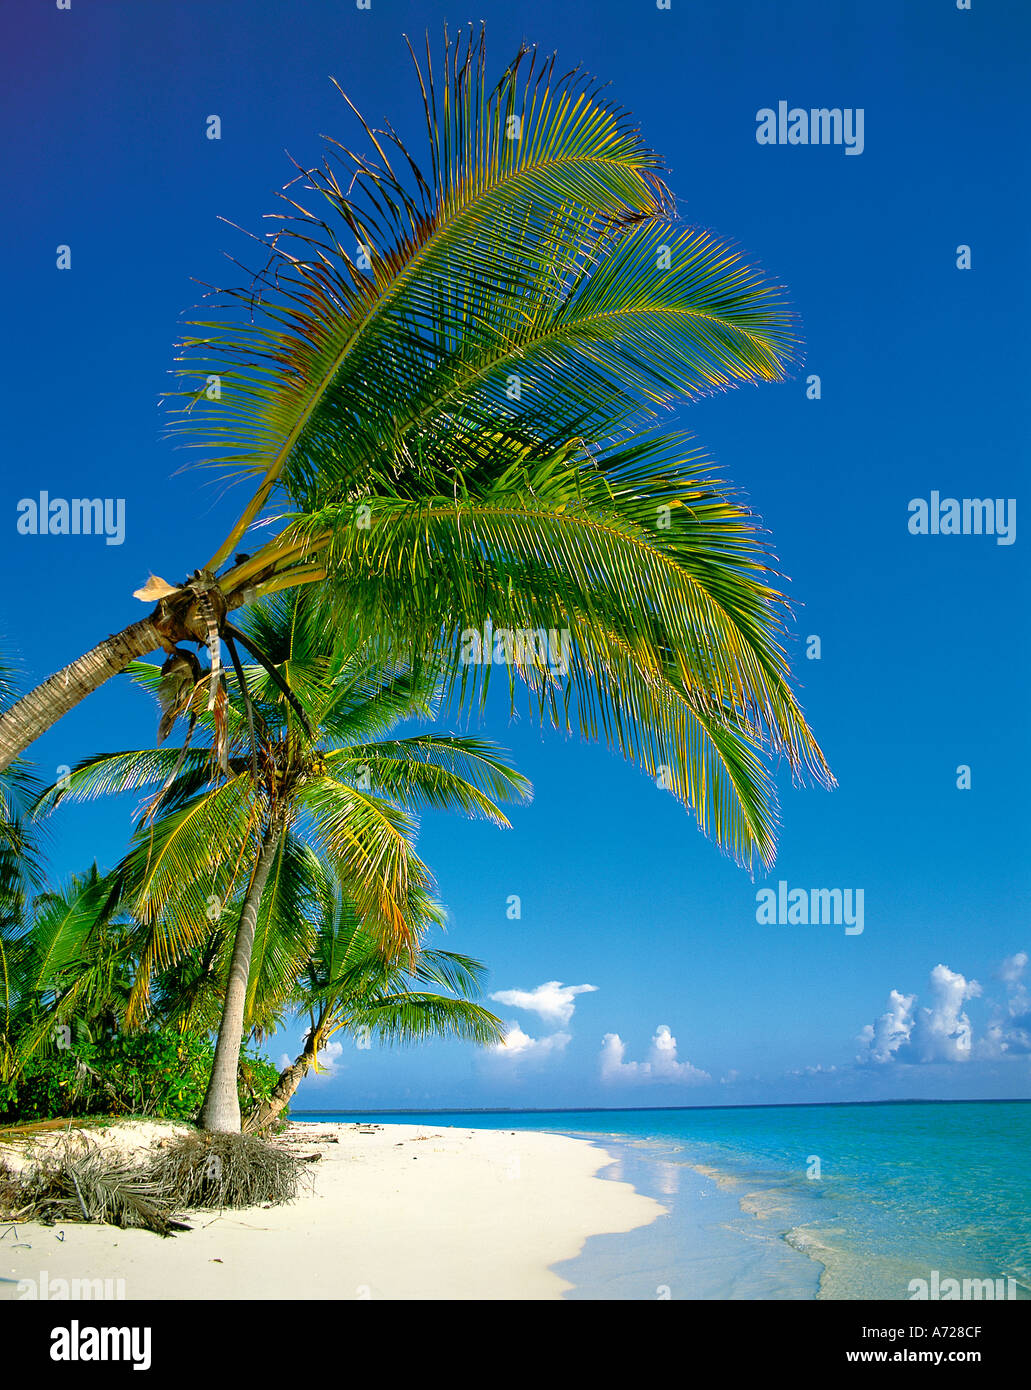 Scène de plage île tropicale avec palmiers sur Ari Atoll Maldives Océan Indien Banque D'Images